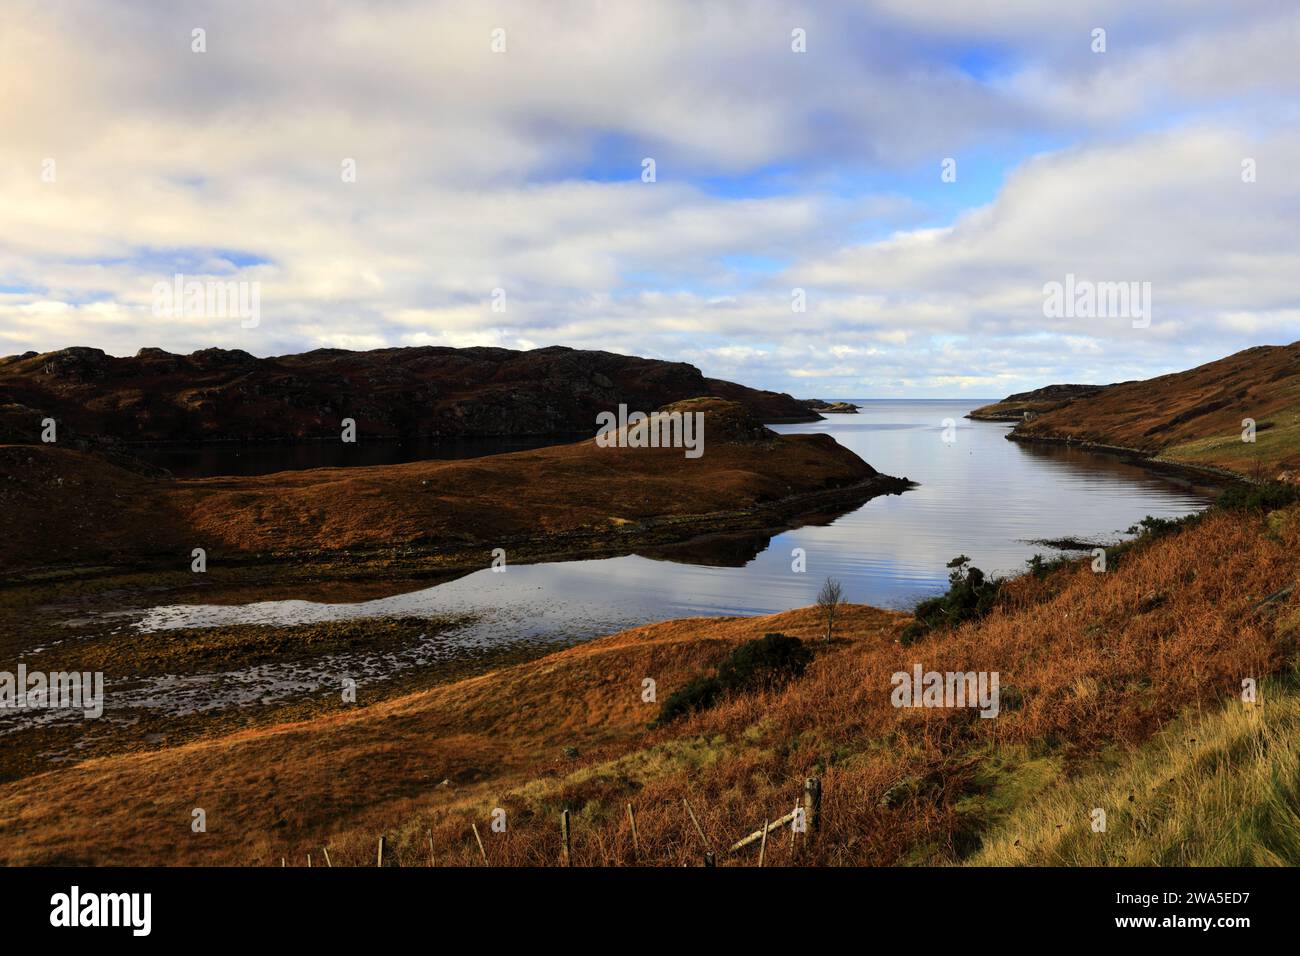 Vista sul Loch Inchard, il lago marino più settentrionale, dal villaggio di Rhiconich, Sutherland, Scozia nord-occidentale, Regno Unito Foto Stock